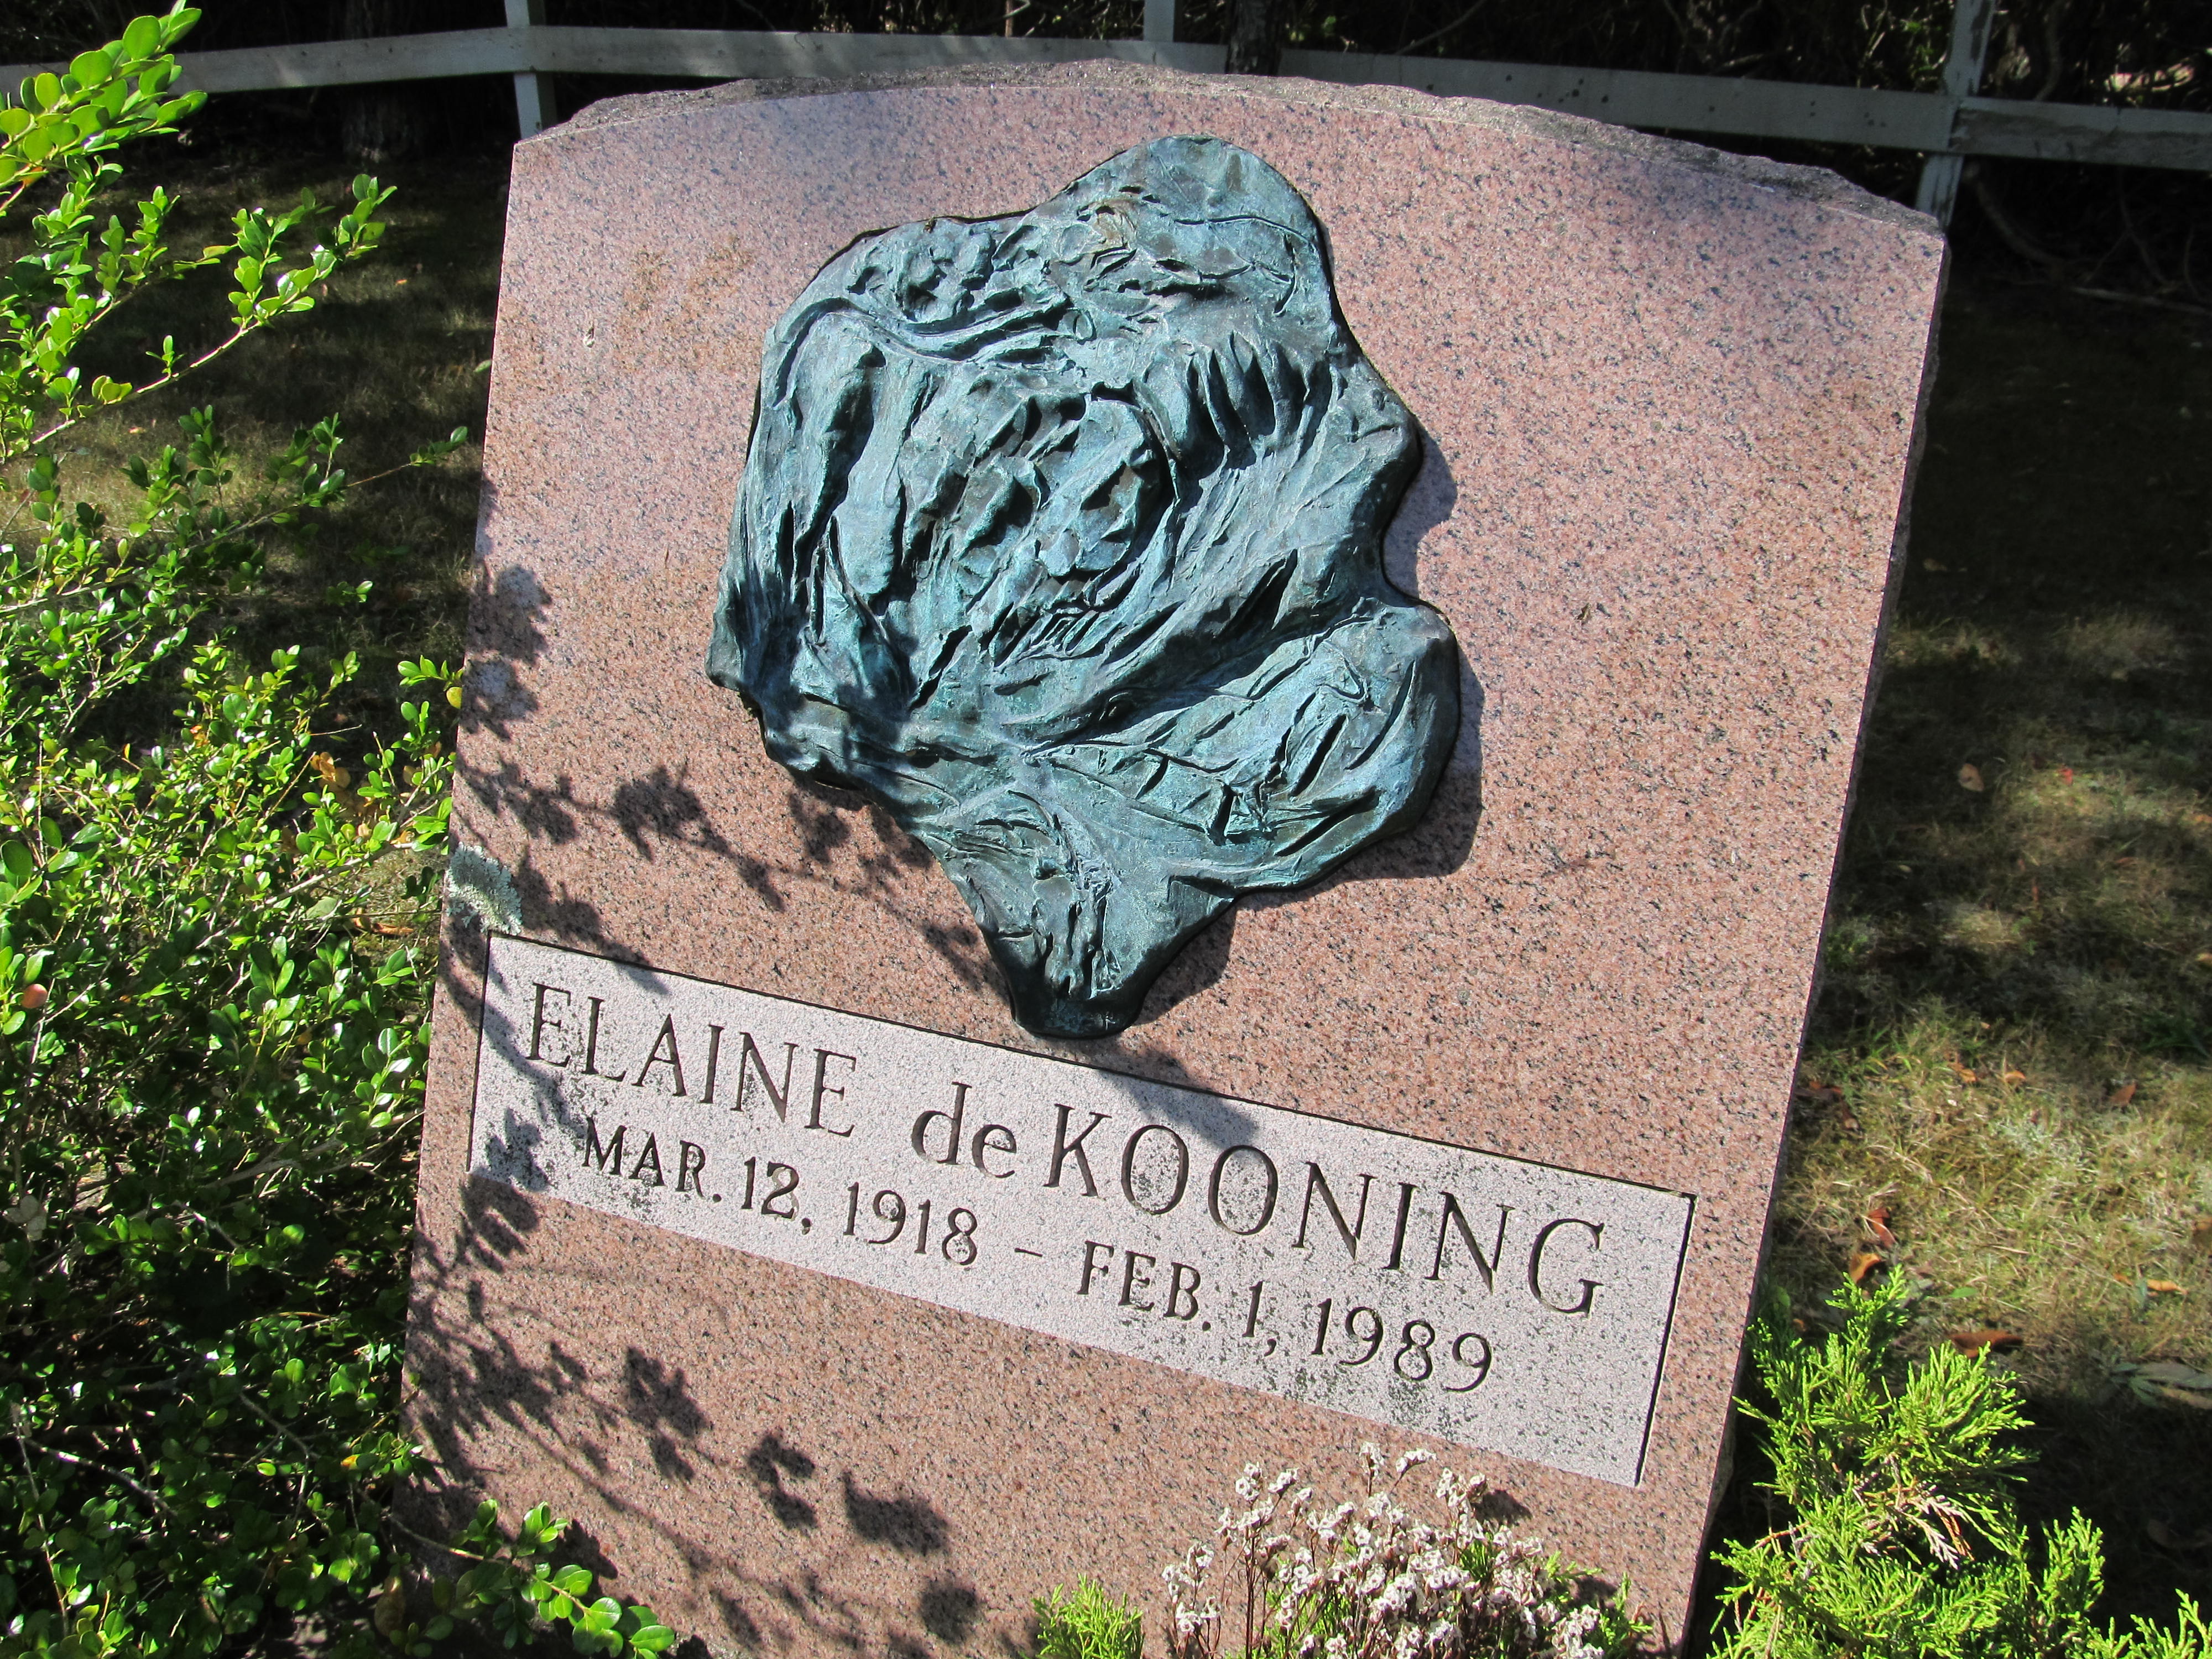 Elaine de Kooming, wife of artist Willem